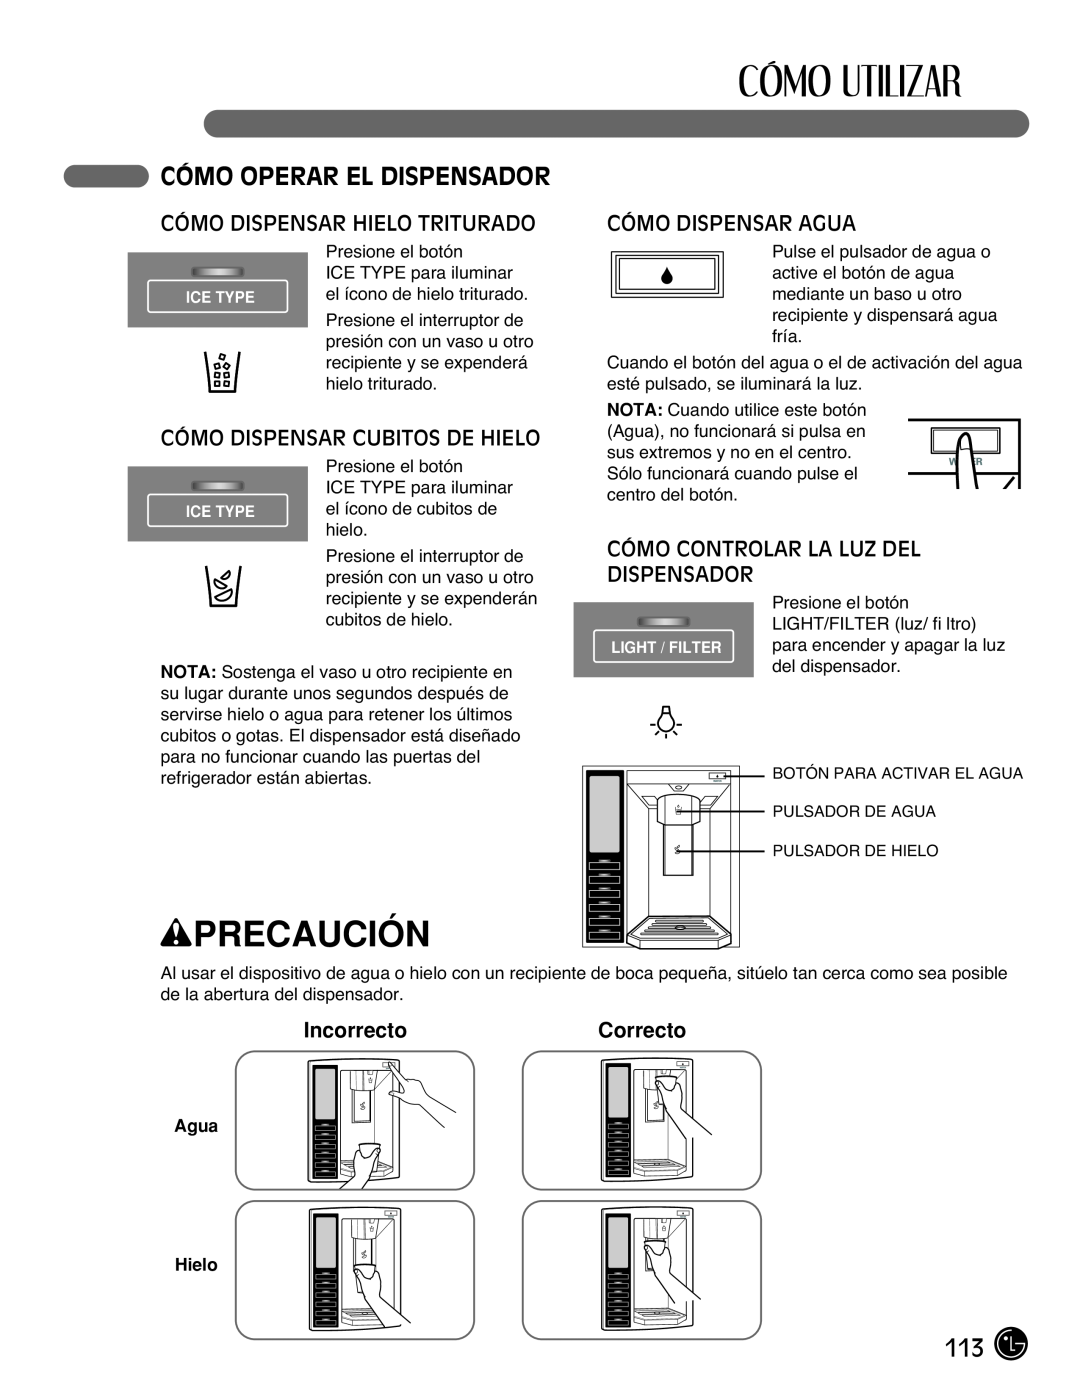 LG Electronics LMX2525971 Cómo Operar El Dispensador, Cómo Dispensar Hielo Triturado, Cómo Dispensar Cubitos De Hielo 